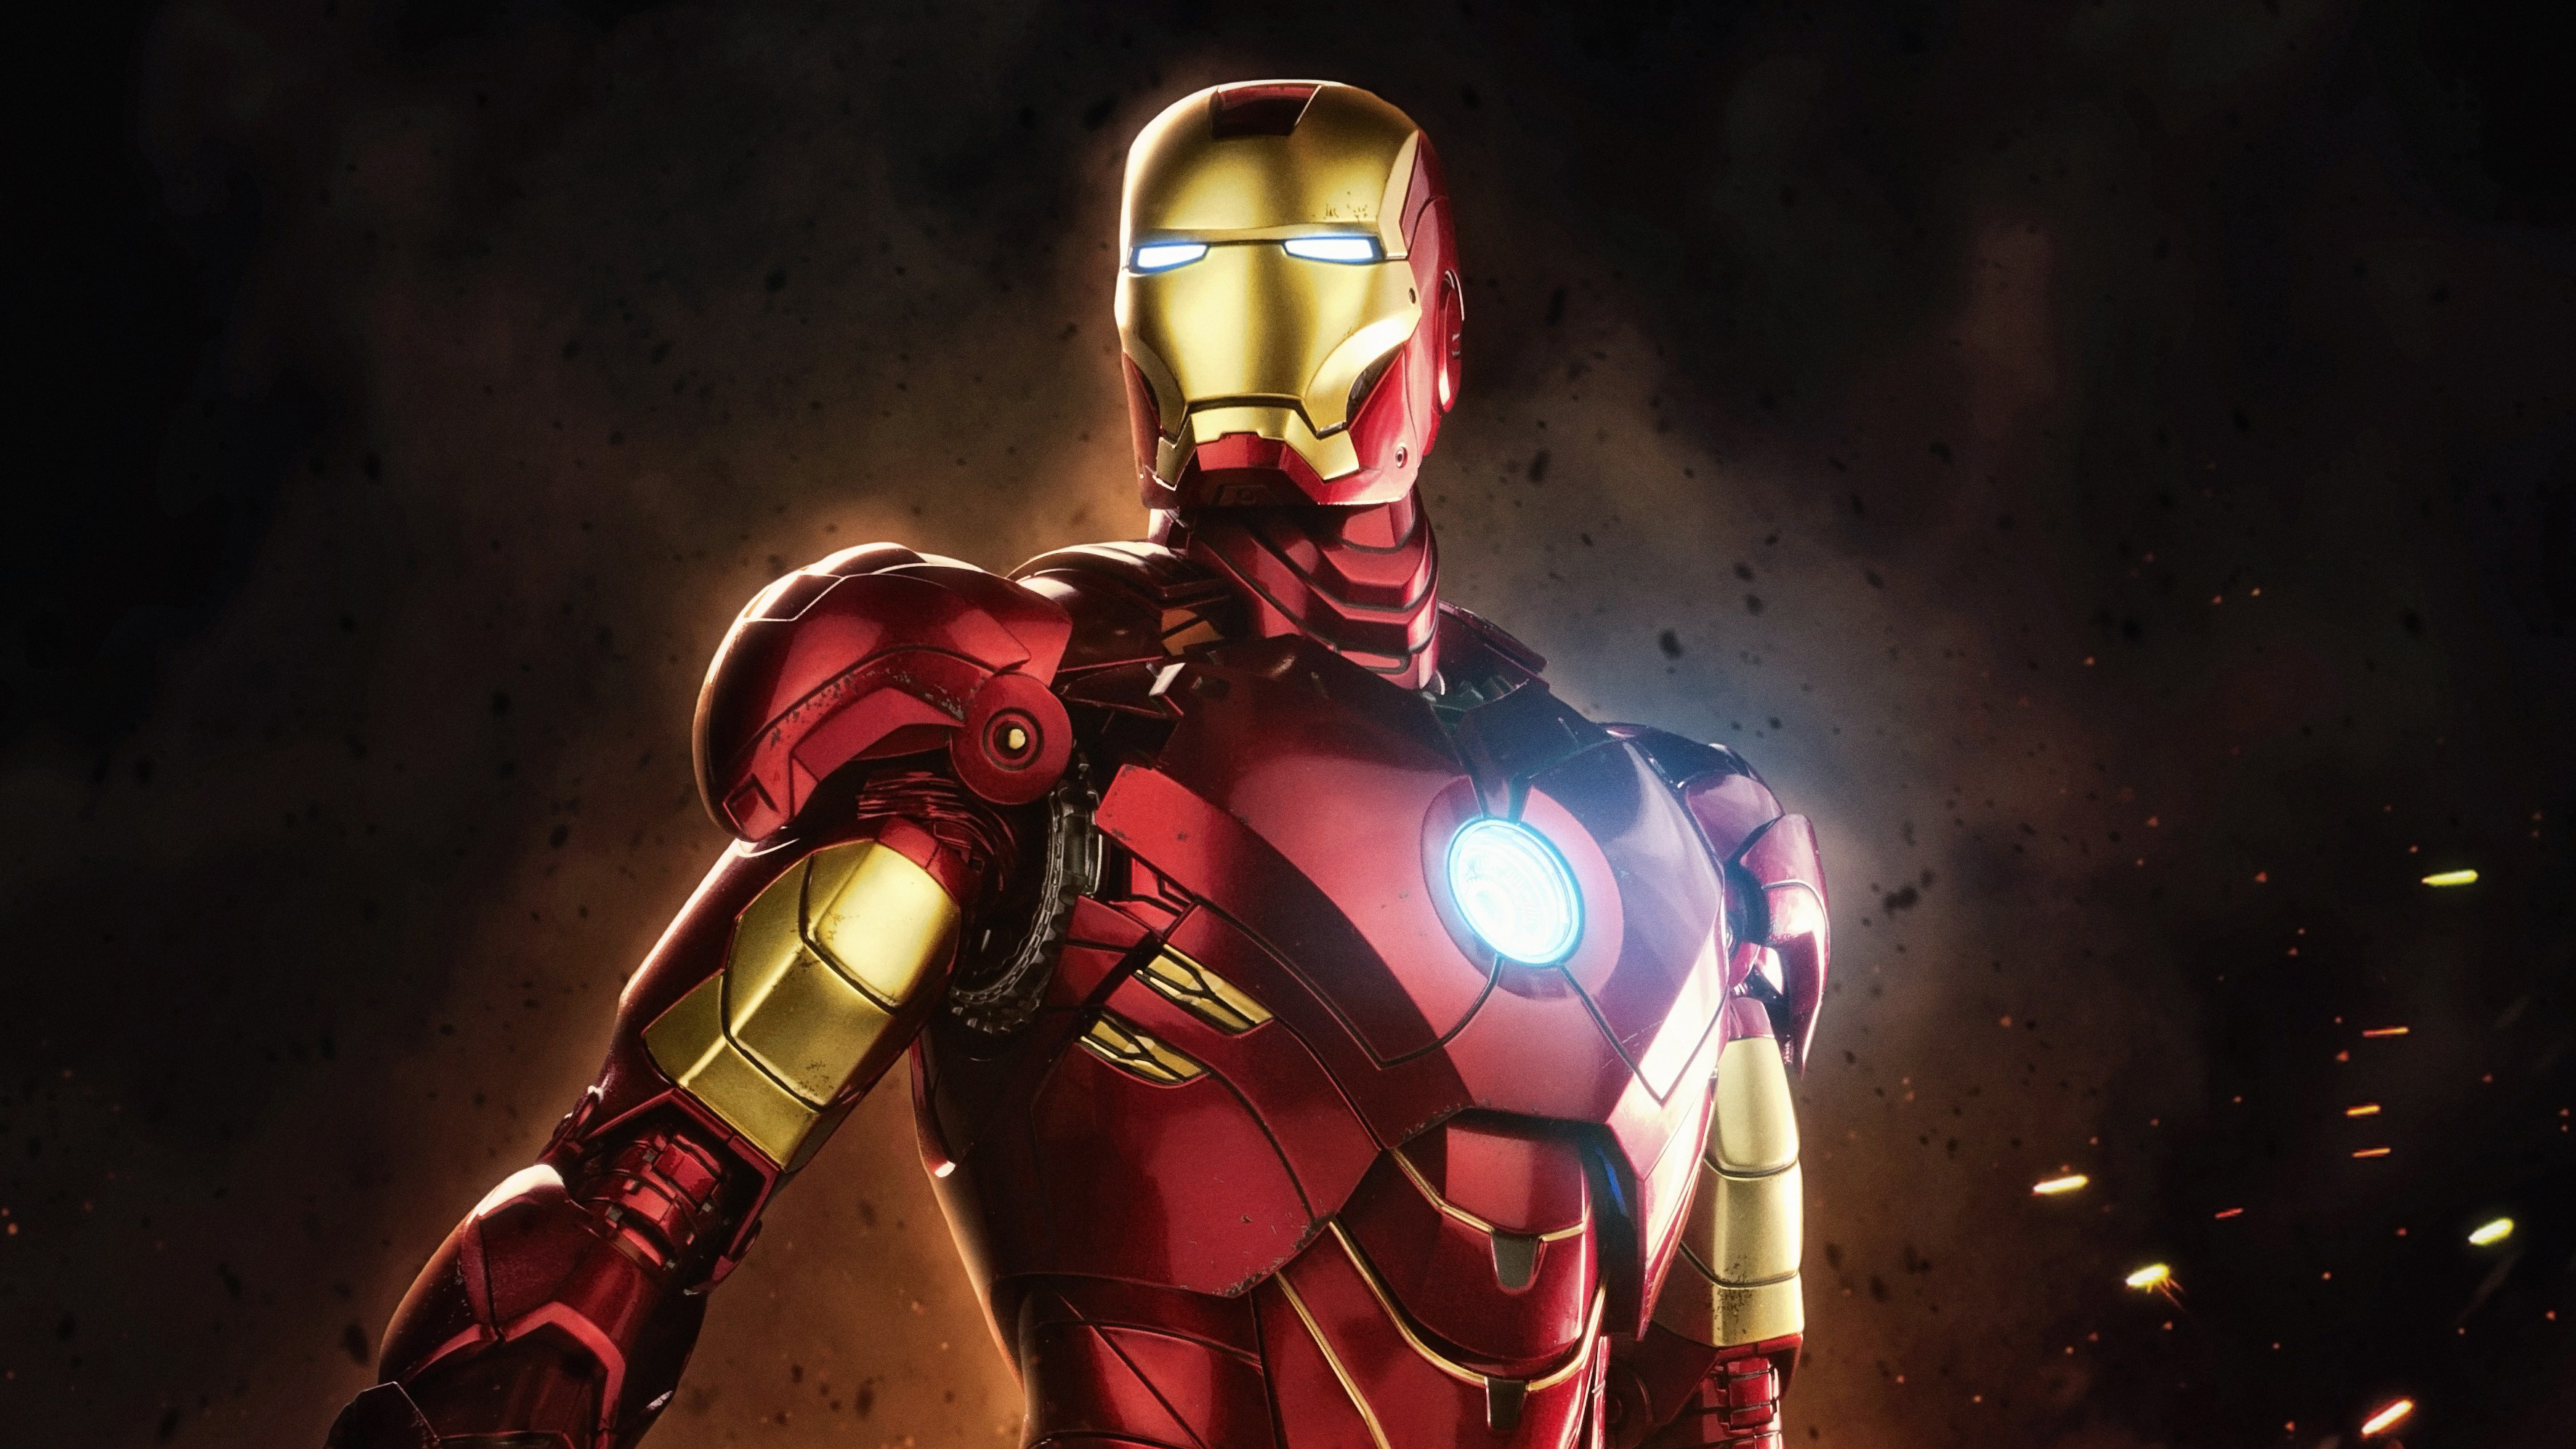 Tải hình nền Iron Man: Bạn muốn trang trí màn hình điện thoại hoặc máy tính với hình nền đầy sáng tạo? Tải hình nền Iron Man ngay và thể hiện tình yêu với siêu anh hùng Người Sắt của bạn. Đảm bảo sẽ khiến cho ai nhìn thấy cũng phải thích thú.